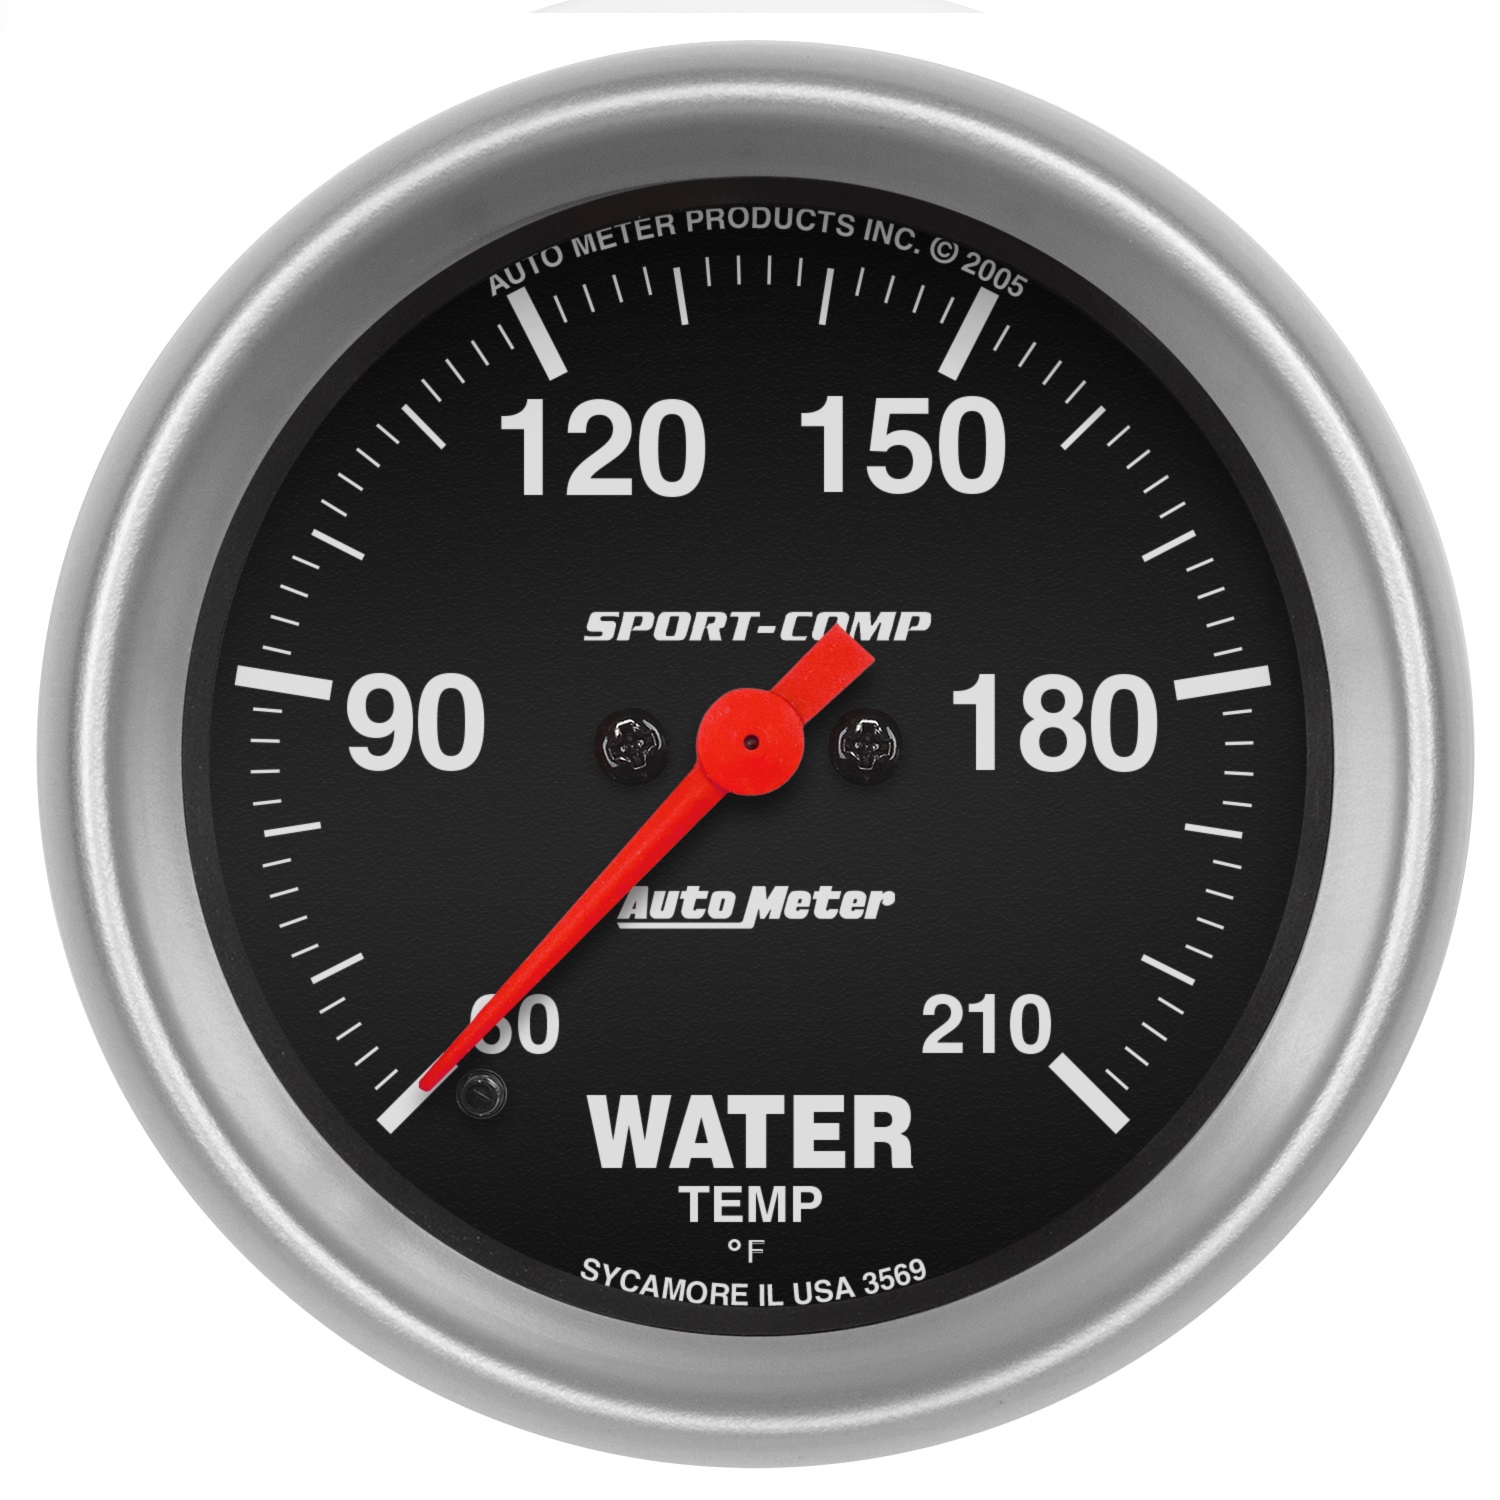 Auto Meter Auto Meter 3569 Sport-Comp; Electric Low Temperature Water Gauge